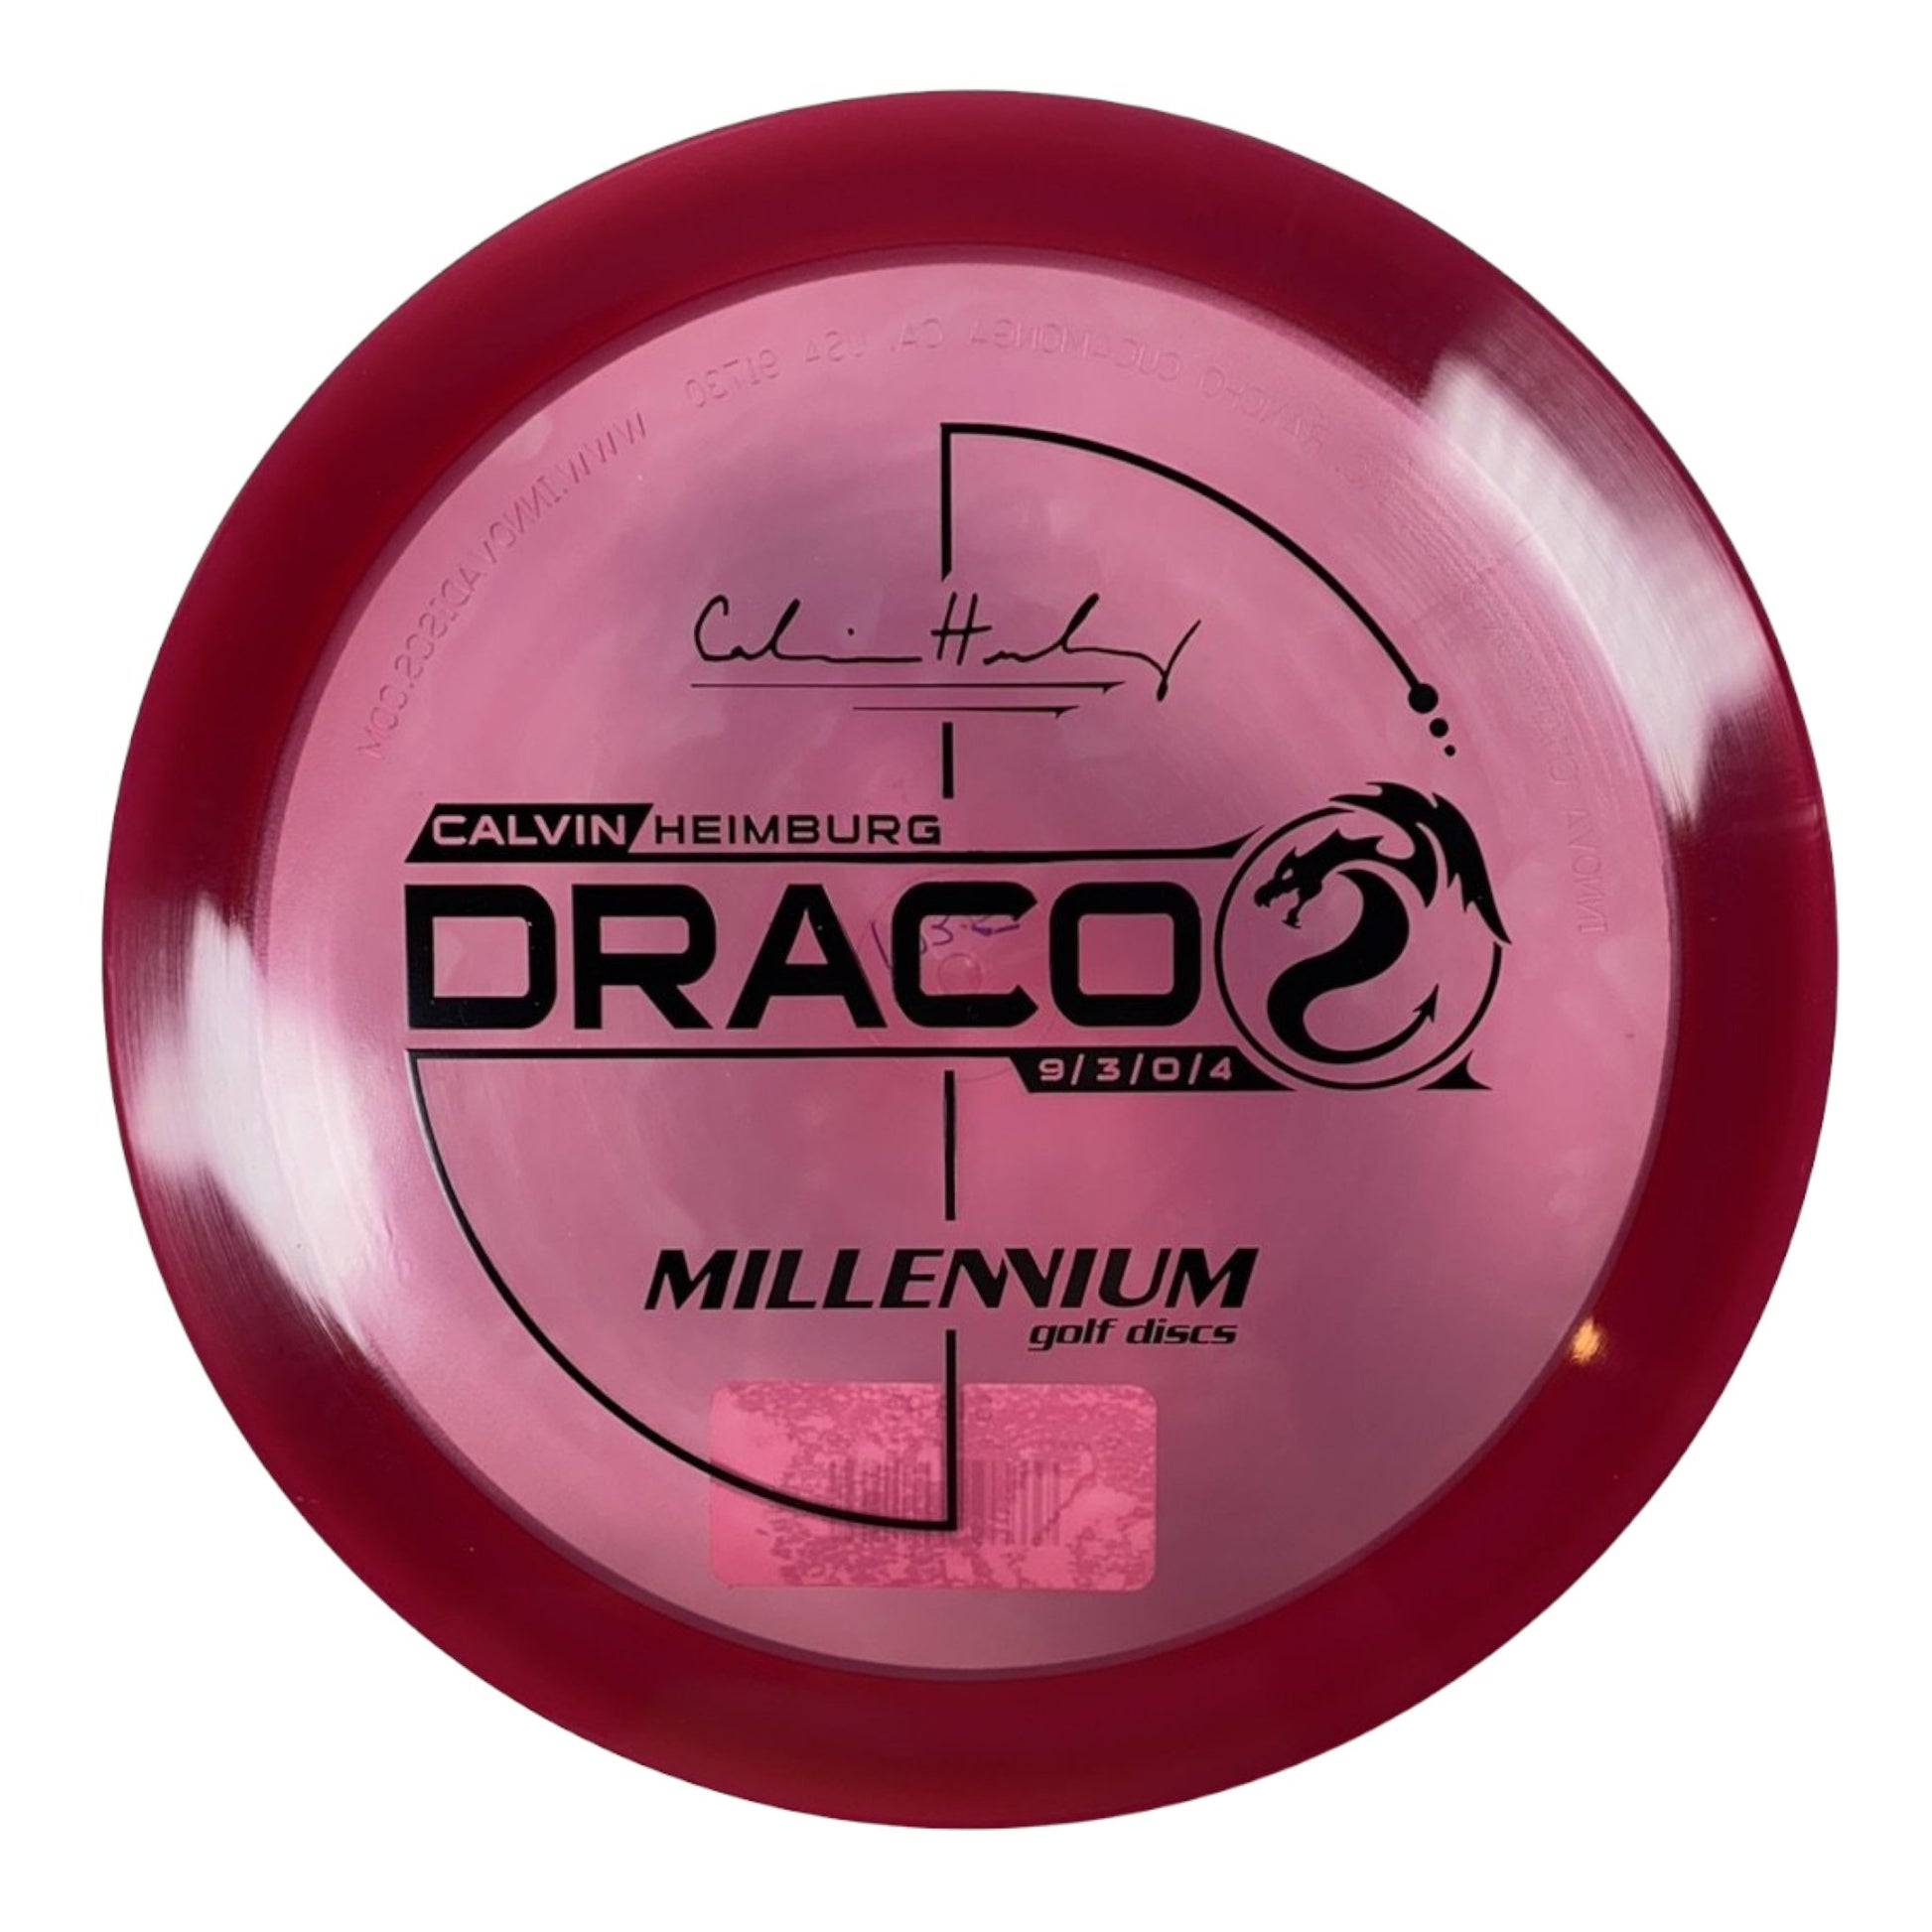 Millennium Golf Discs Draco | Quantum | Red/Black 175g (Calvin Heimburg) Disc Golf